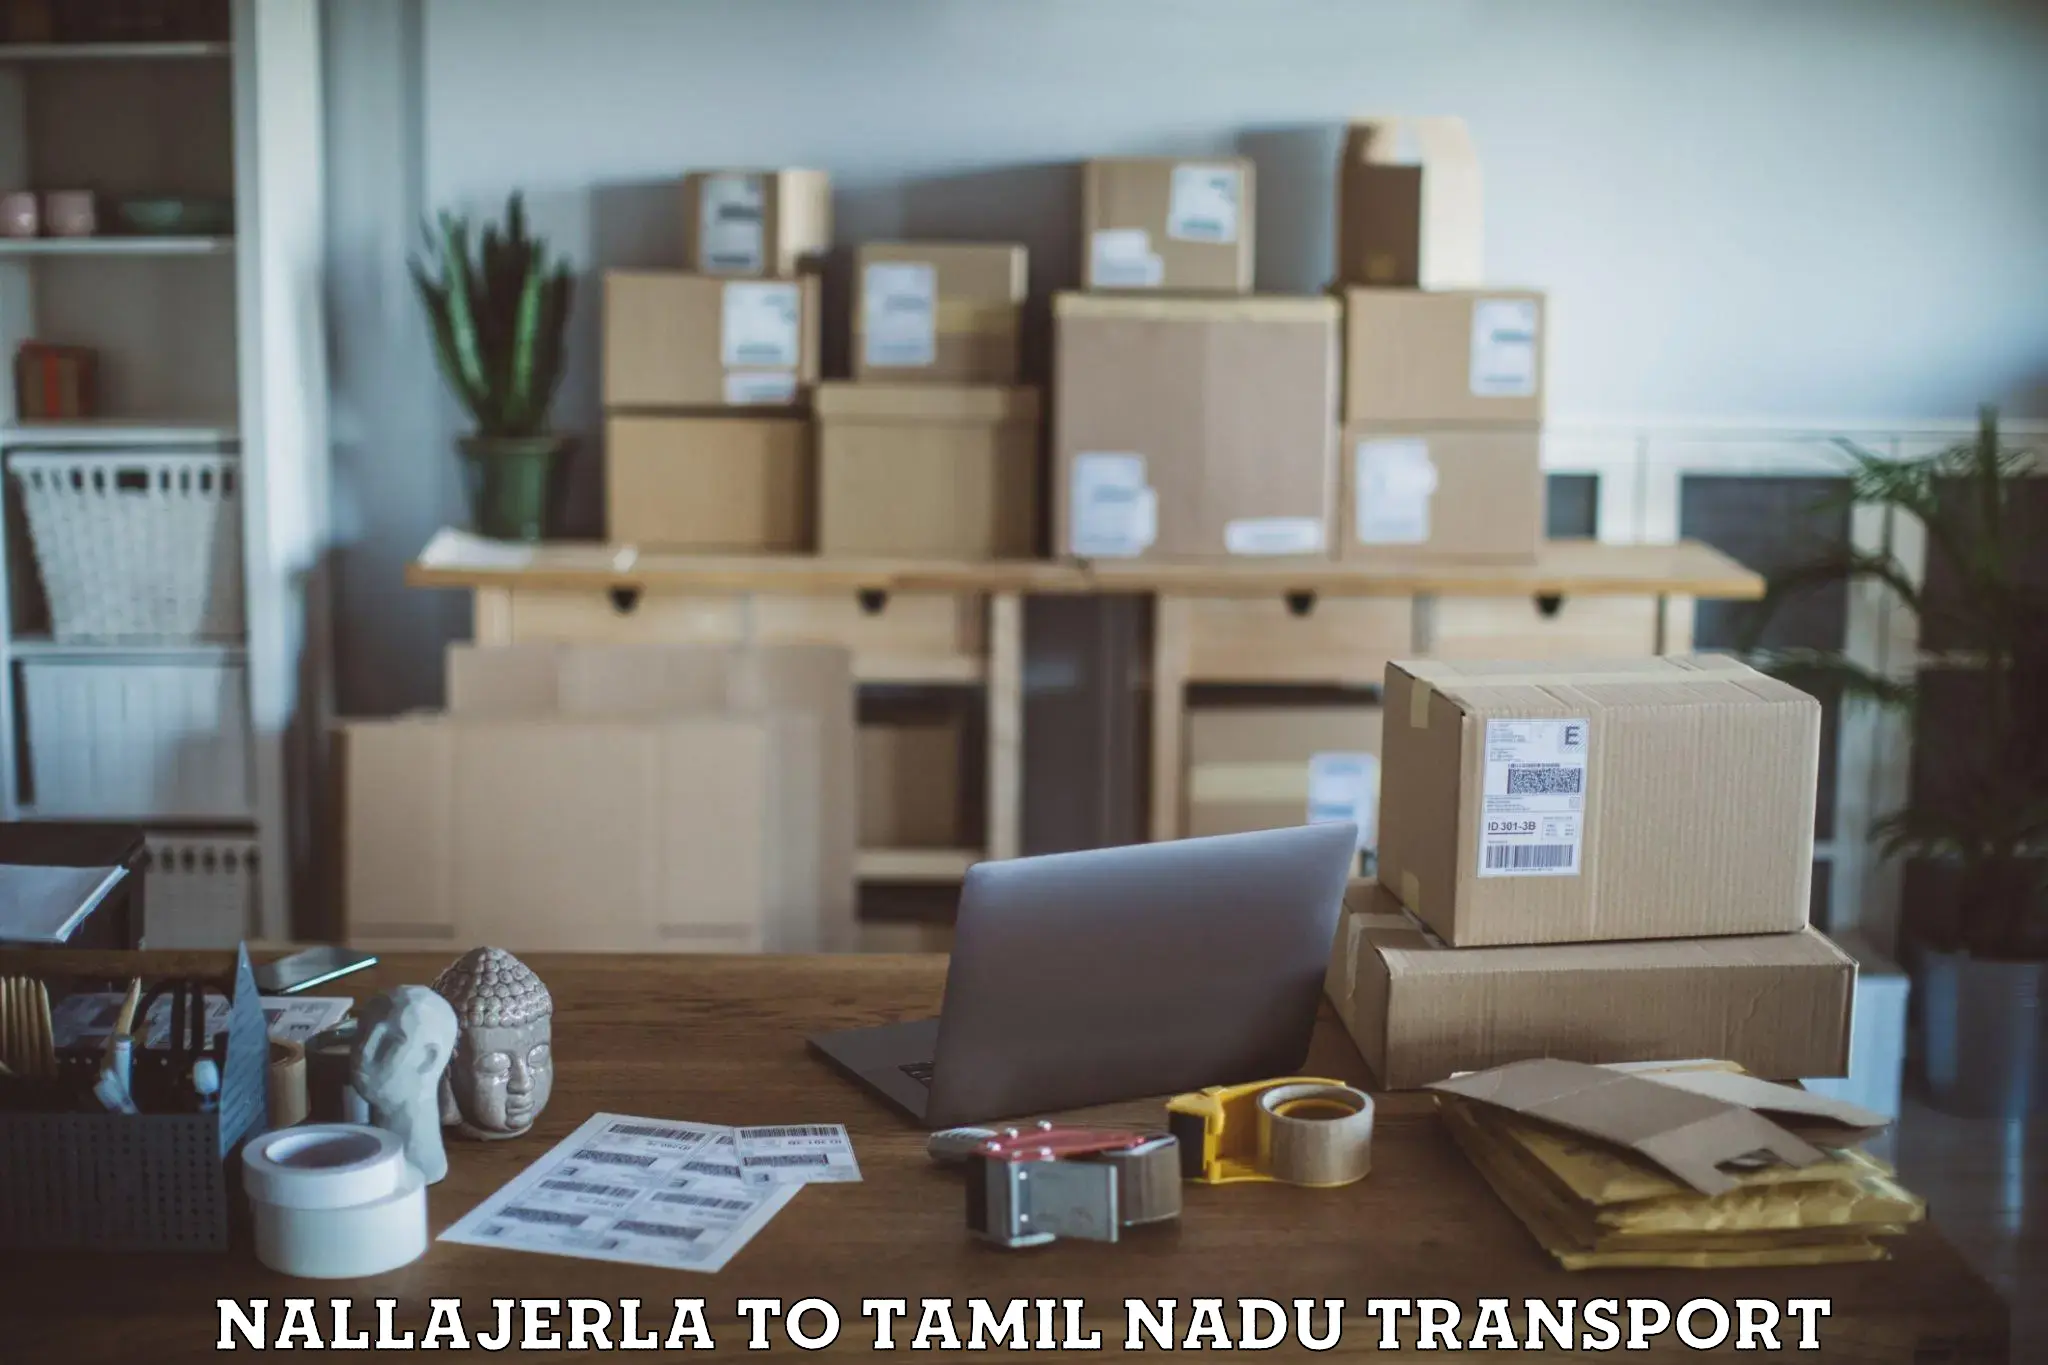 Cargo train transport services Nallajerla to IIIT Tiruchirappalli